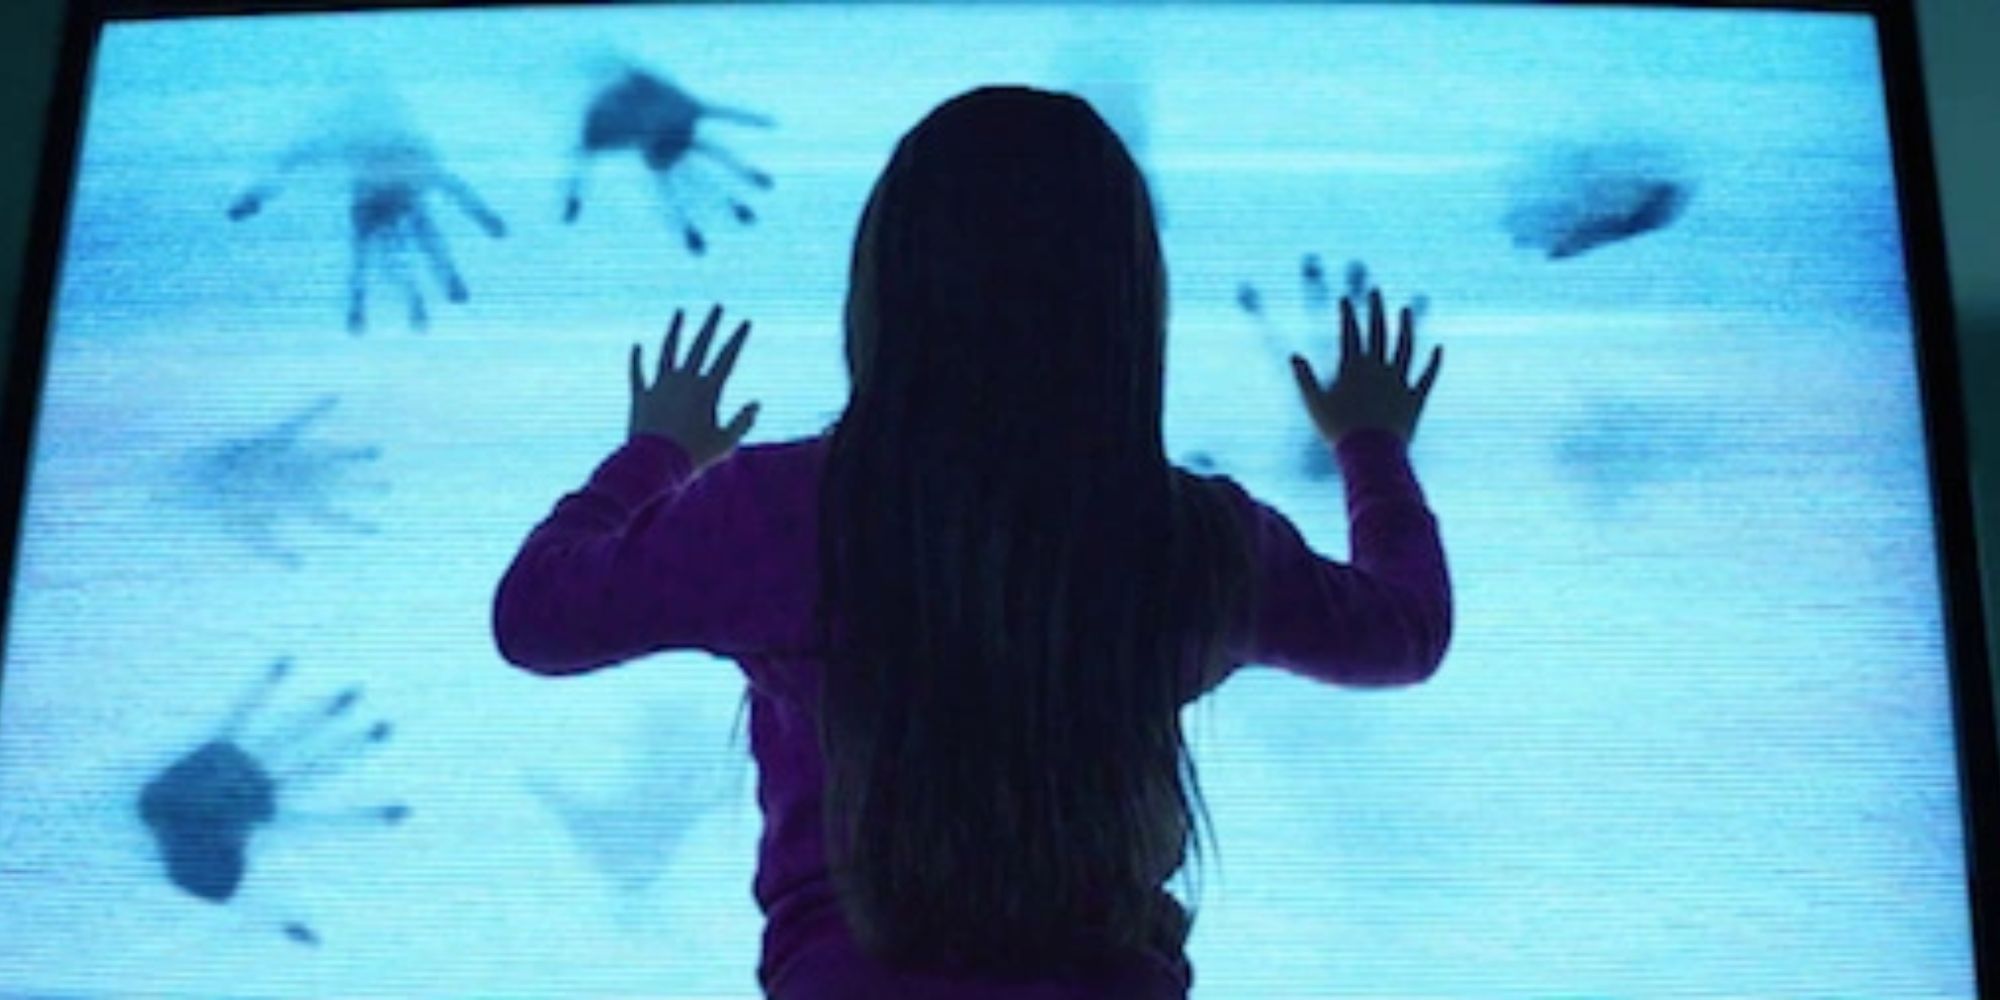 Uma cena do filme 'Poltergeist' de 2015.  Uma jovem pressiona o rosto contra uma TV estática enquanto marcas de mãos começam a aparecer na tela.